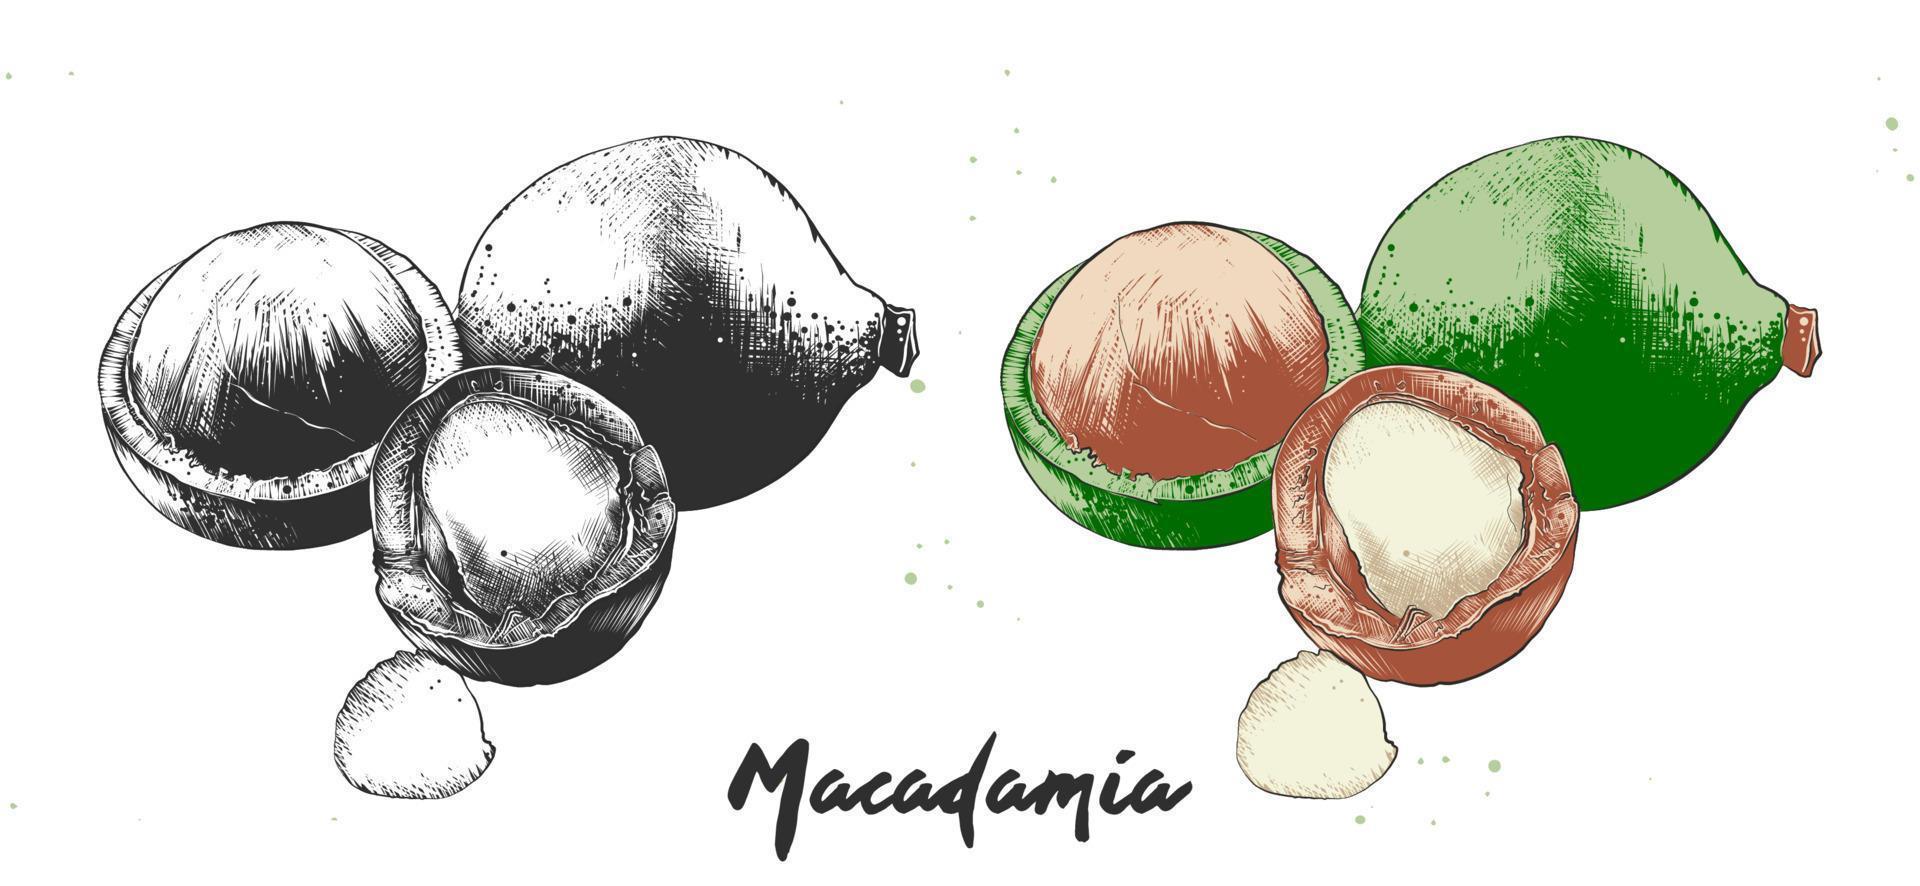 vektor graverat stil illustration för affischer, dekoration och skriva ut. hand dragen etsning skiss av macadamia nötter i svartvit och färgrik. detaljerad vegetarian mat linocut teckning.